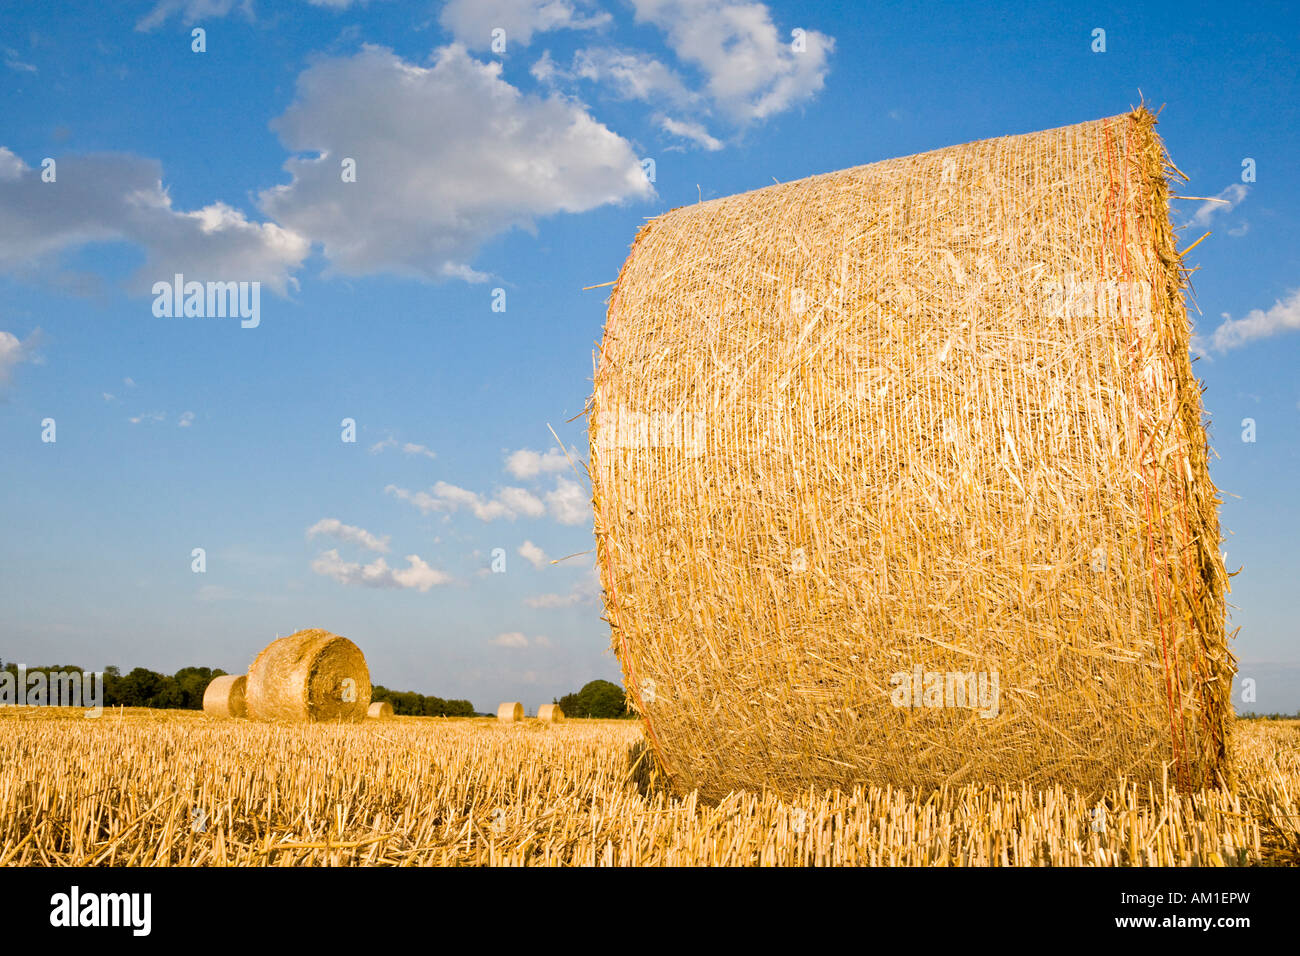 Botte de paille sur un champ de céréales, Bavière, Allemagne Banque D'Images